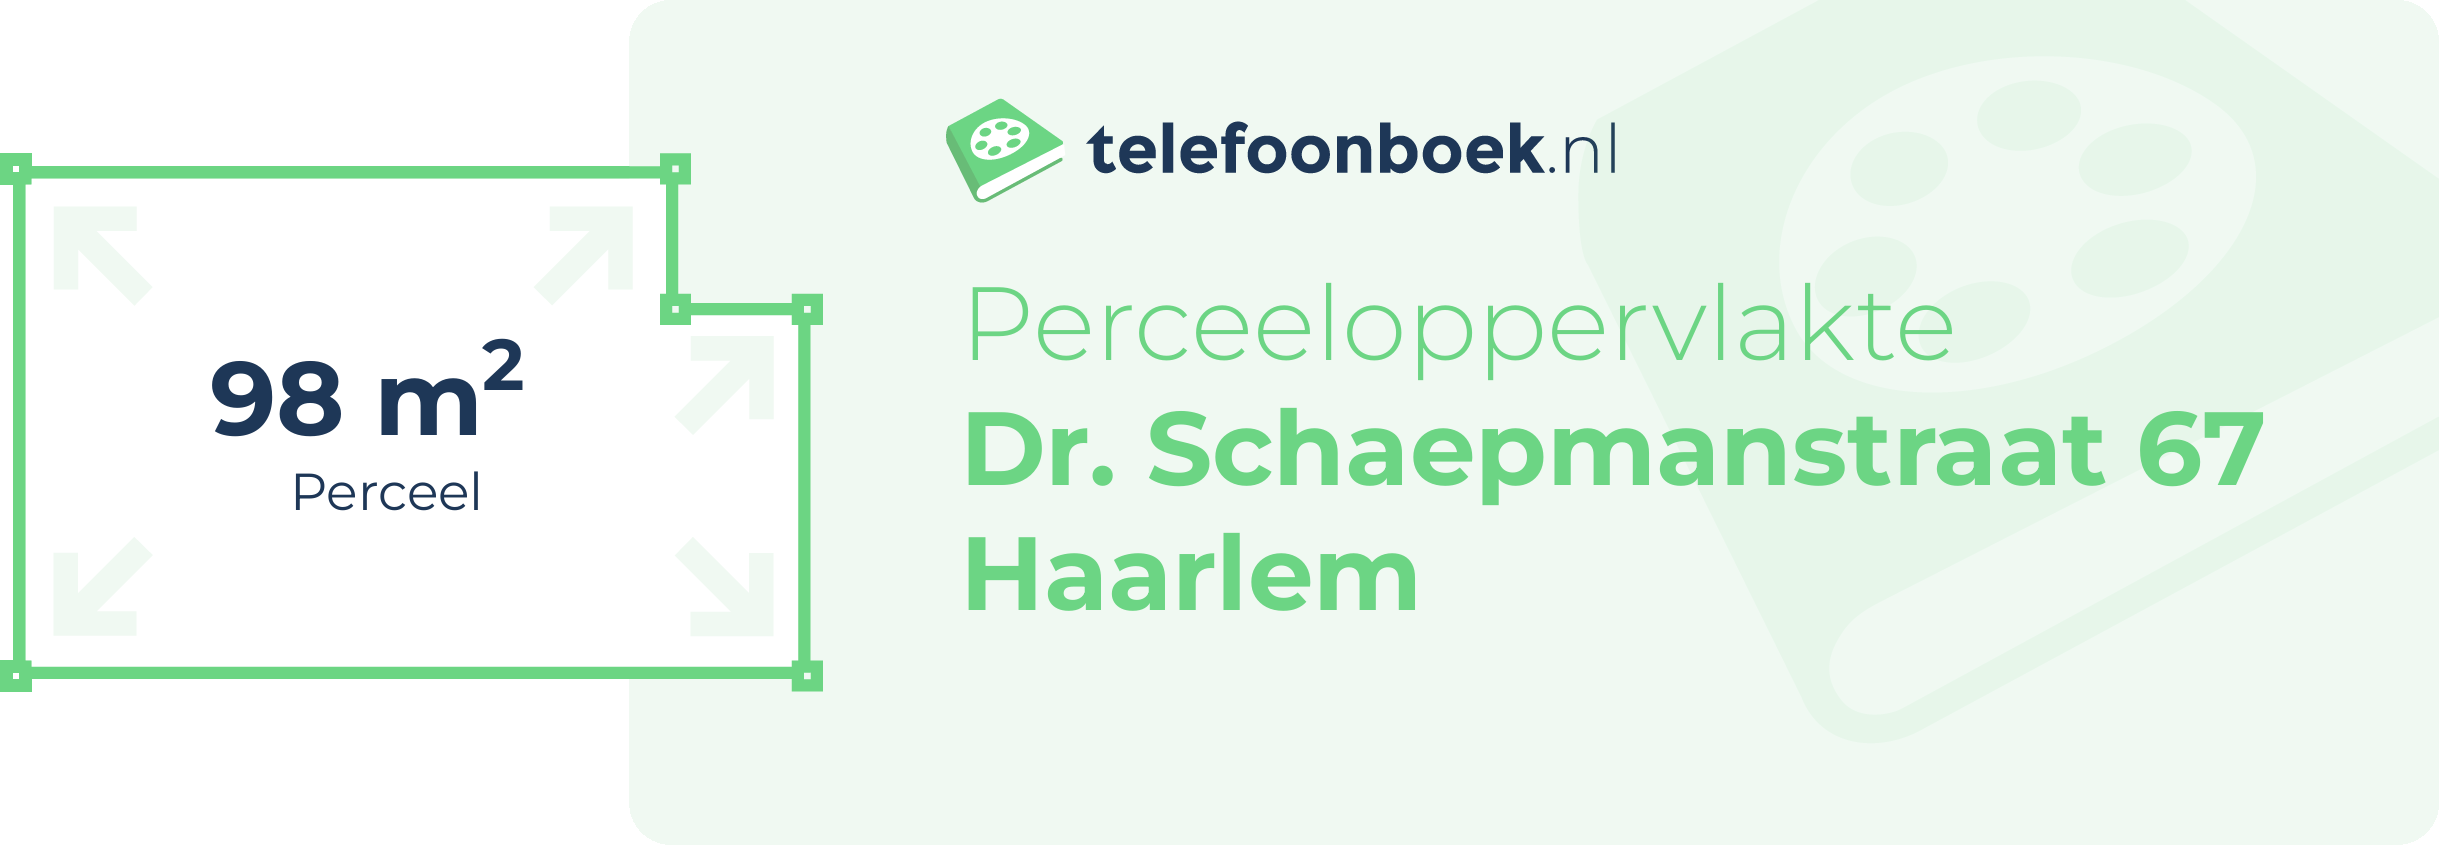 Perceeloppervlakte Dr. Schaepmanstraat 67 Haarlem